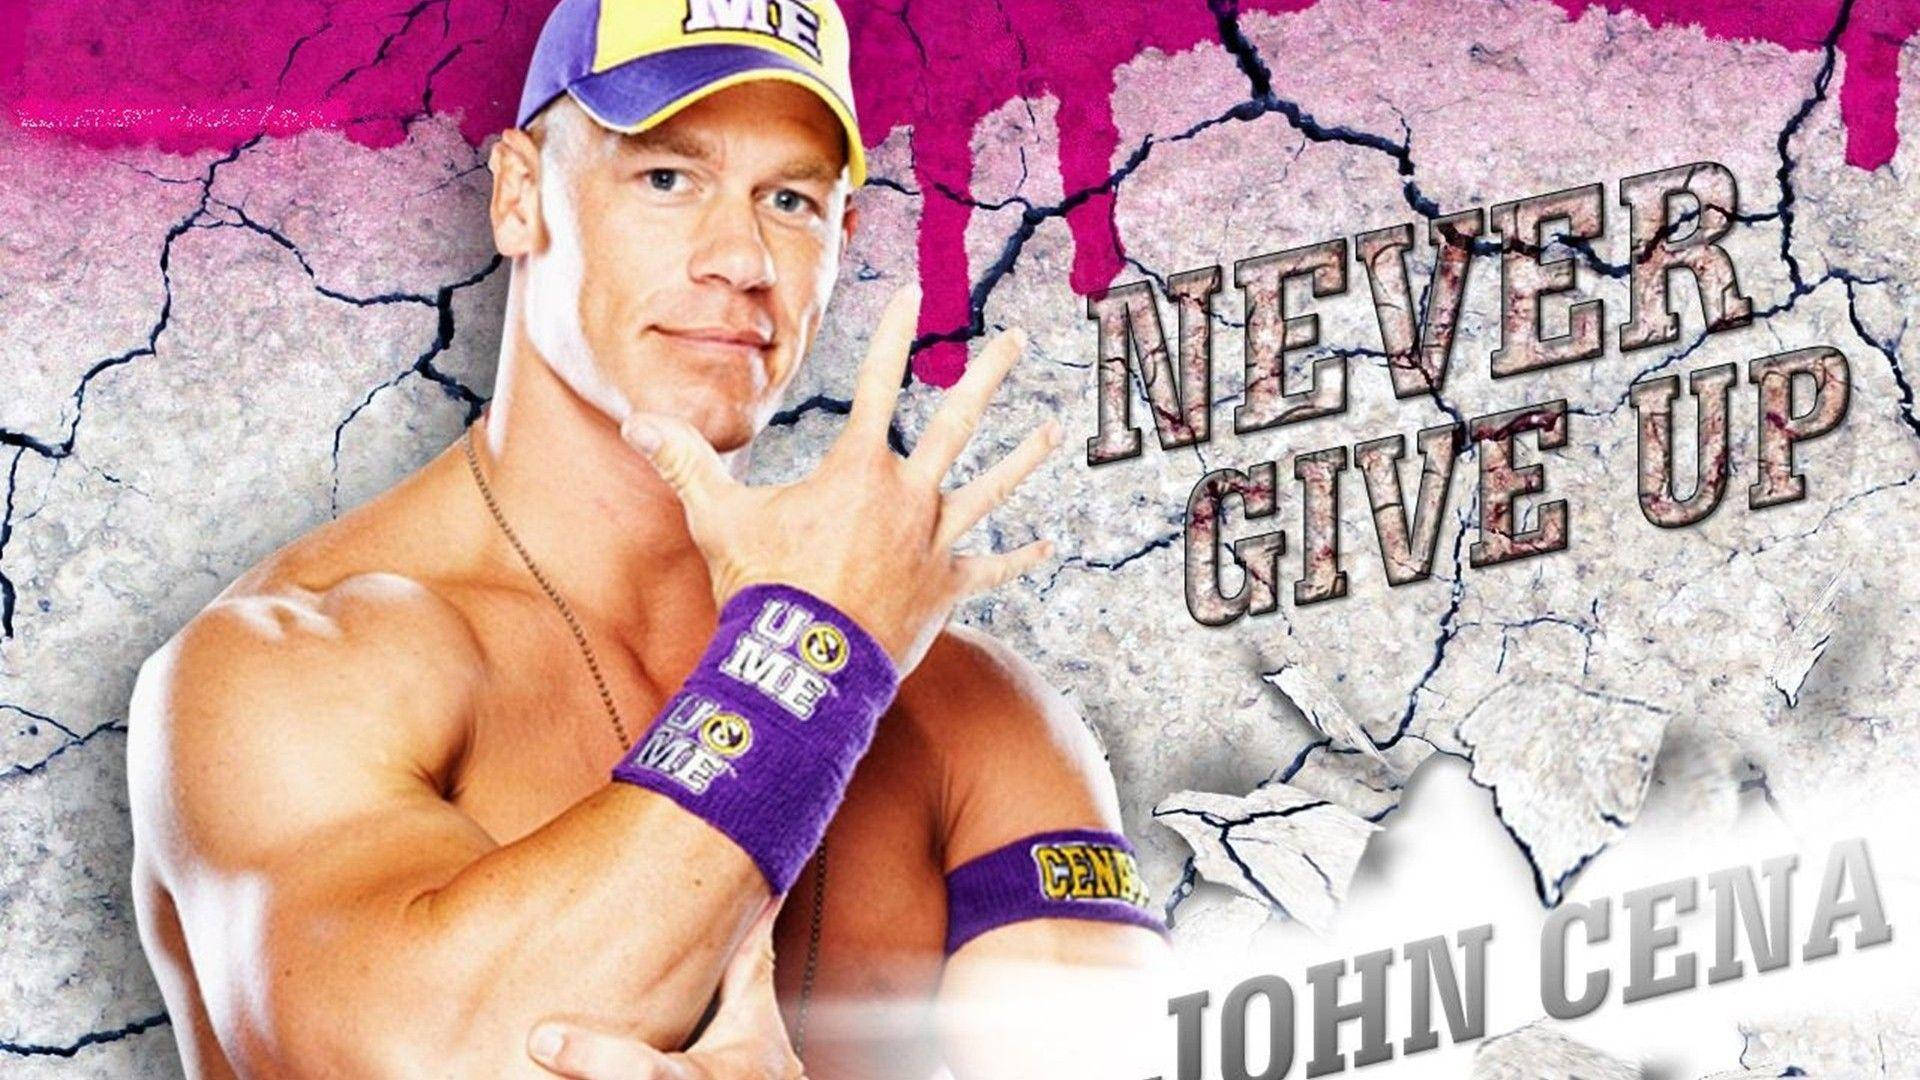 American Wrestler John Cena Digital Cover Background